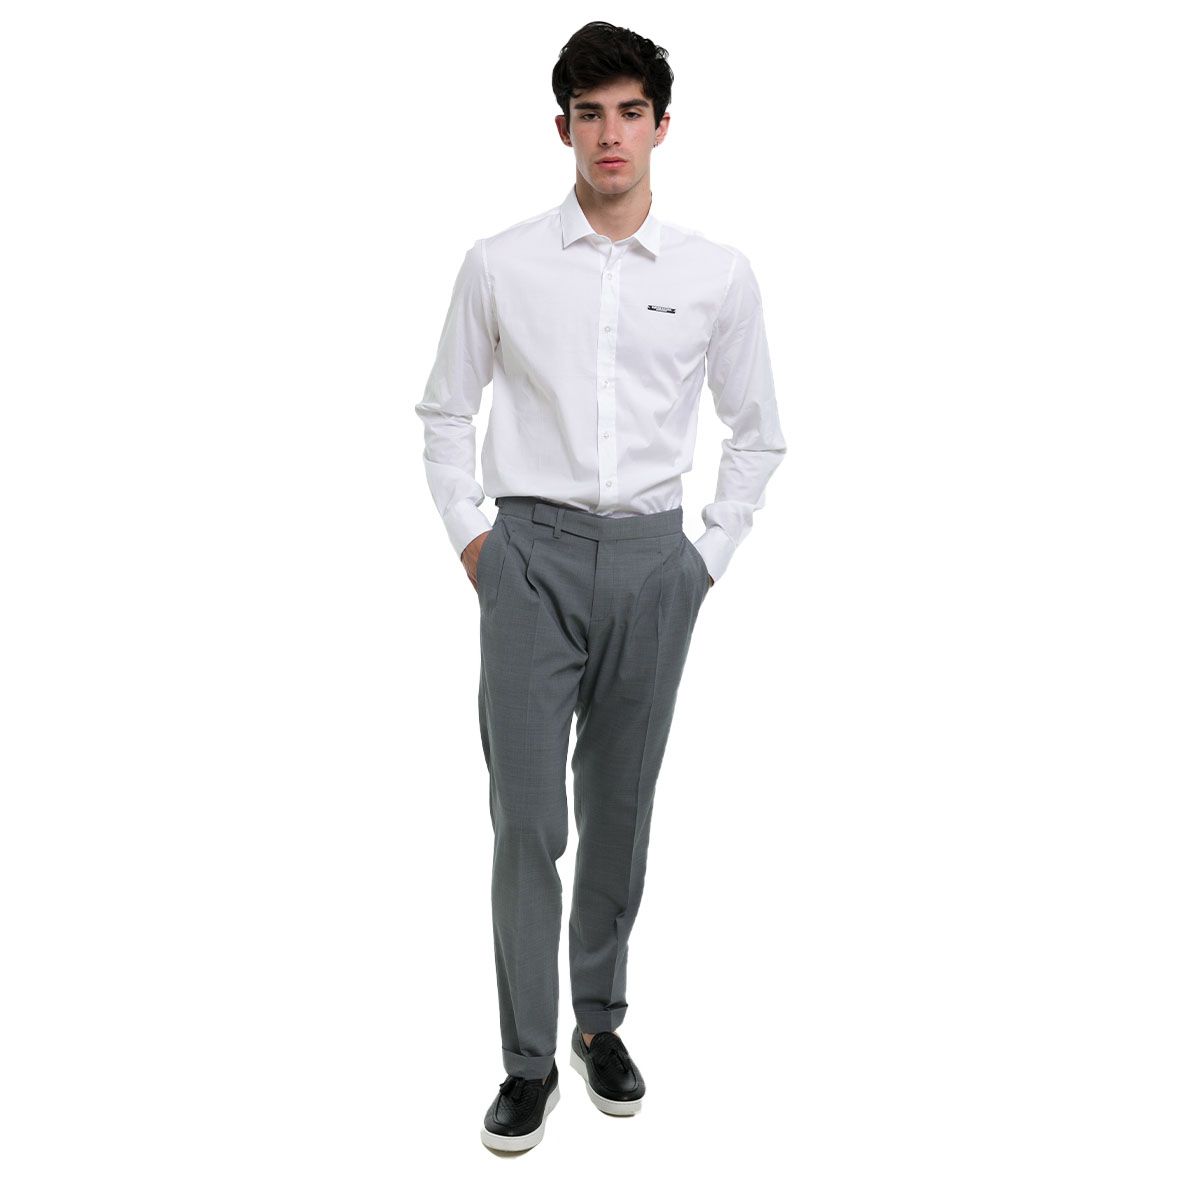 Grey Cotton Pants